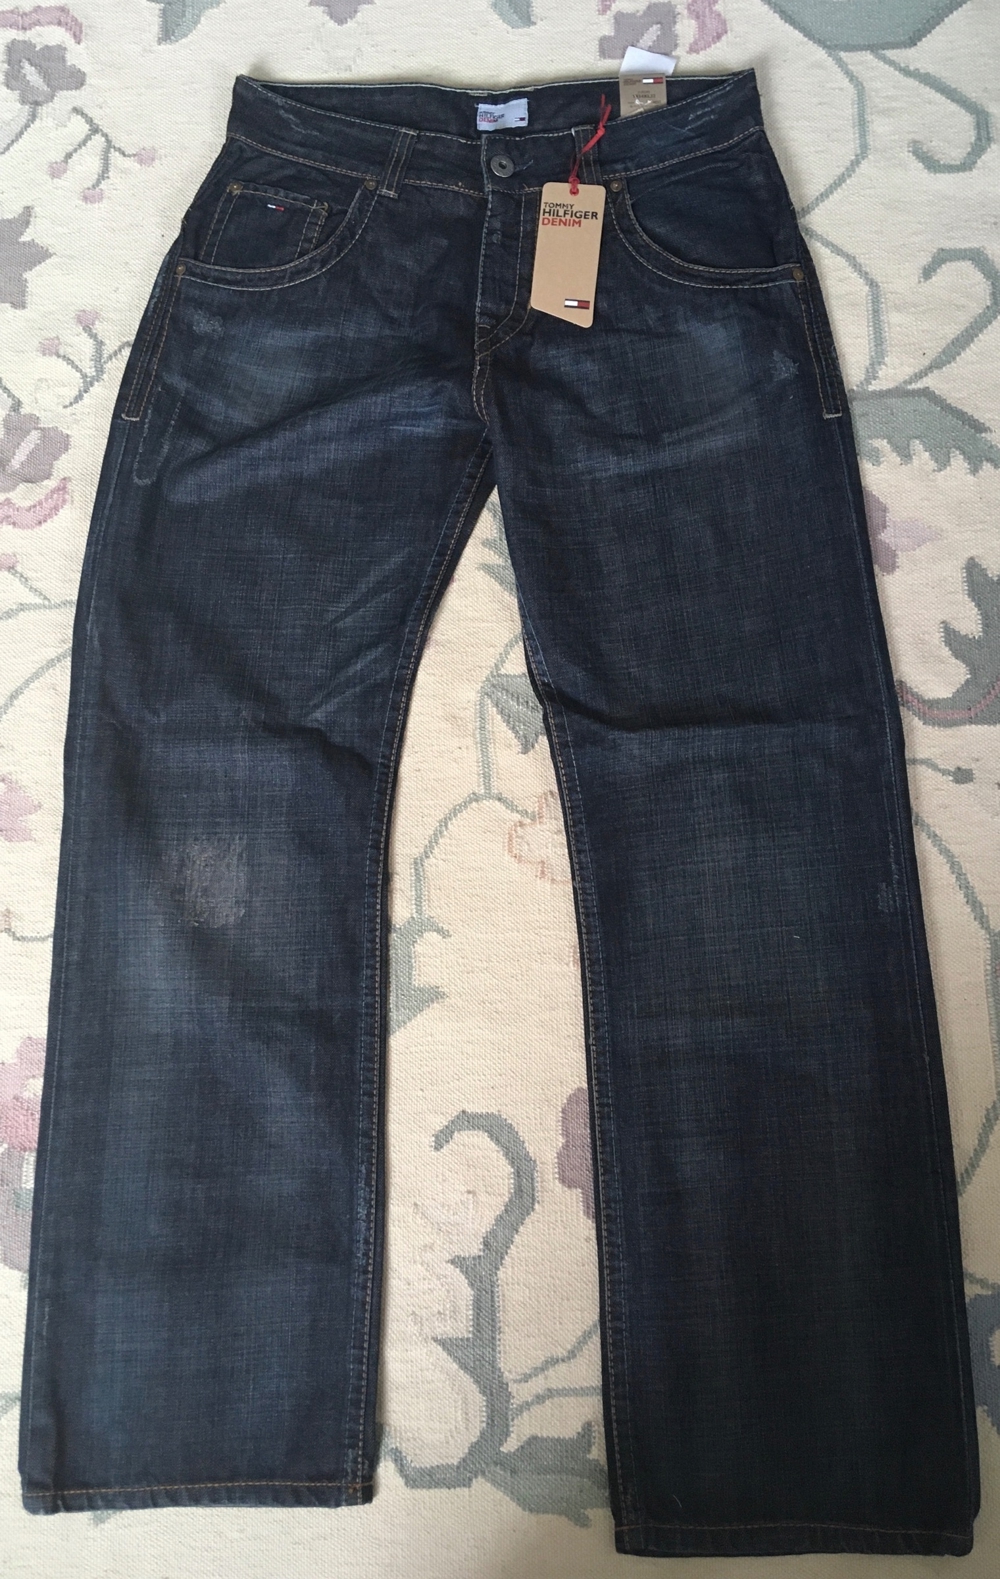 NEU - Hilfiger Jeans W34 XL32